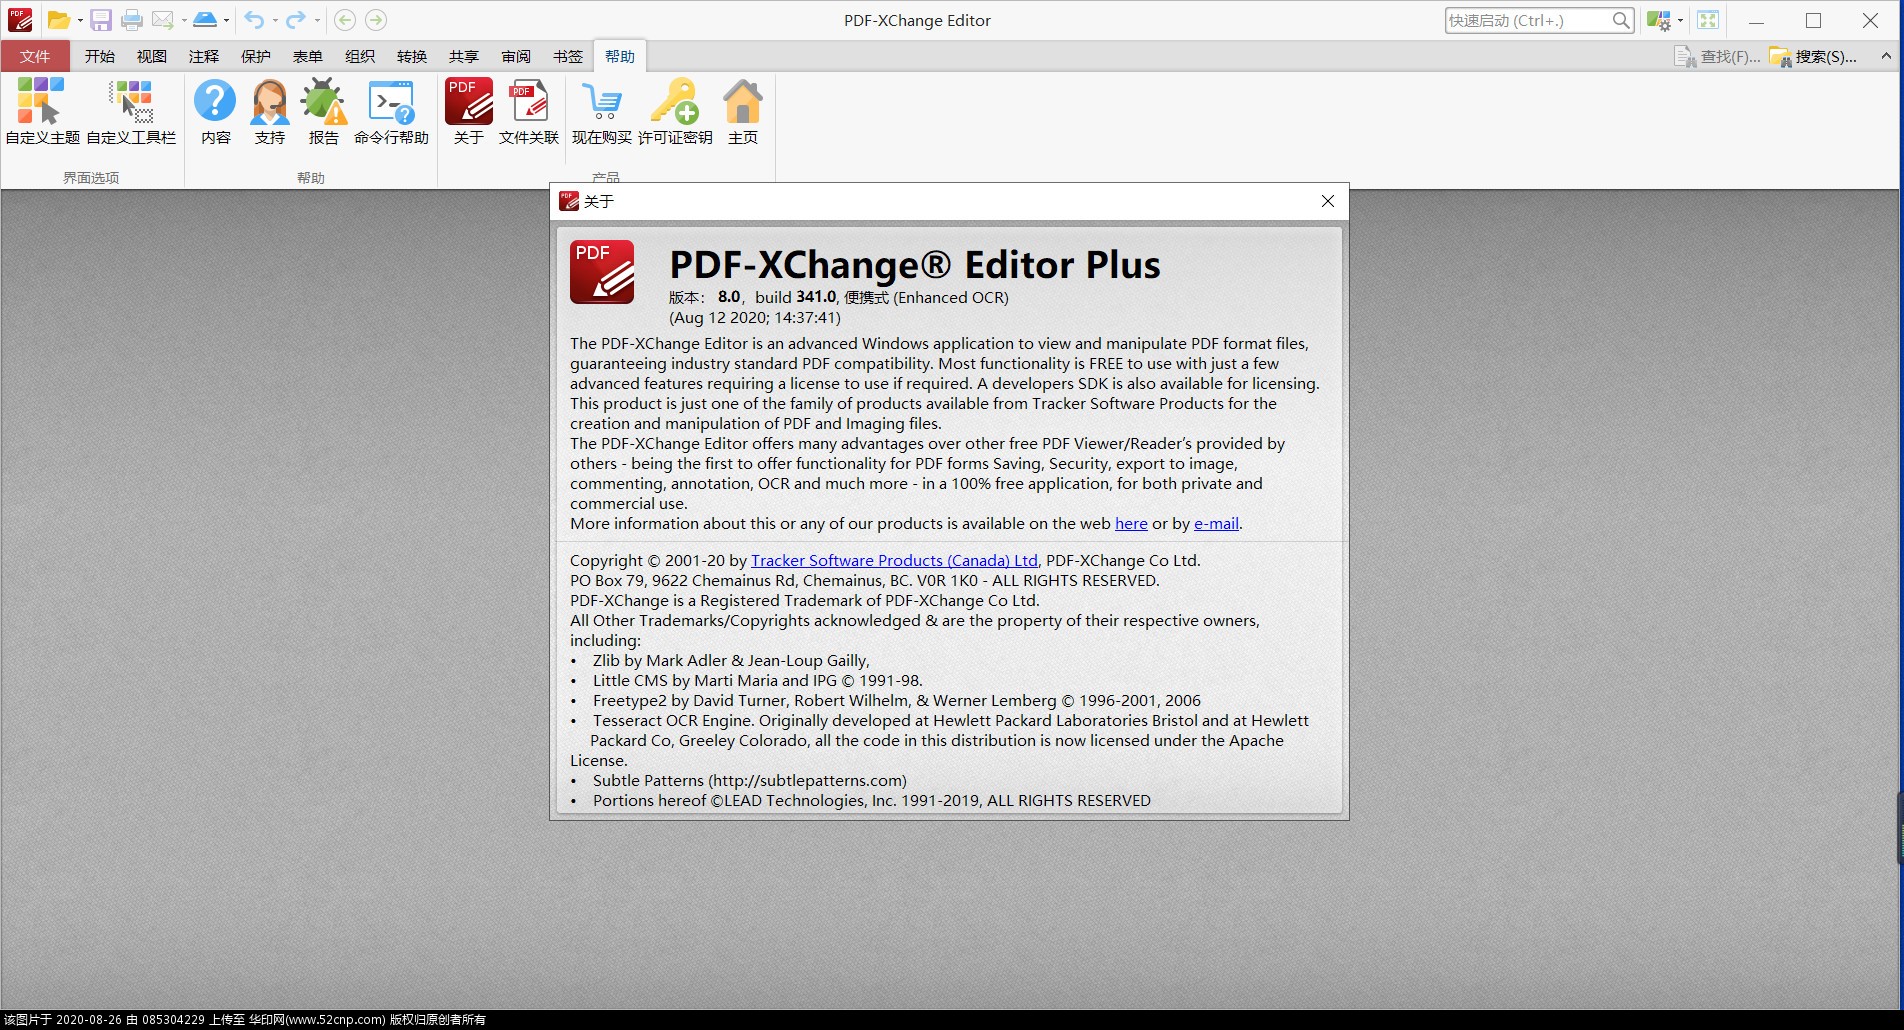 PDF-XChange Editor Plus v8.0.341.0{tag}(1)